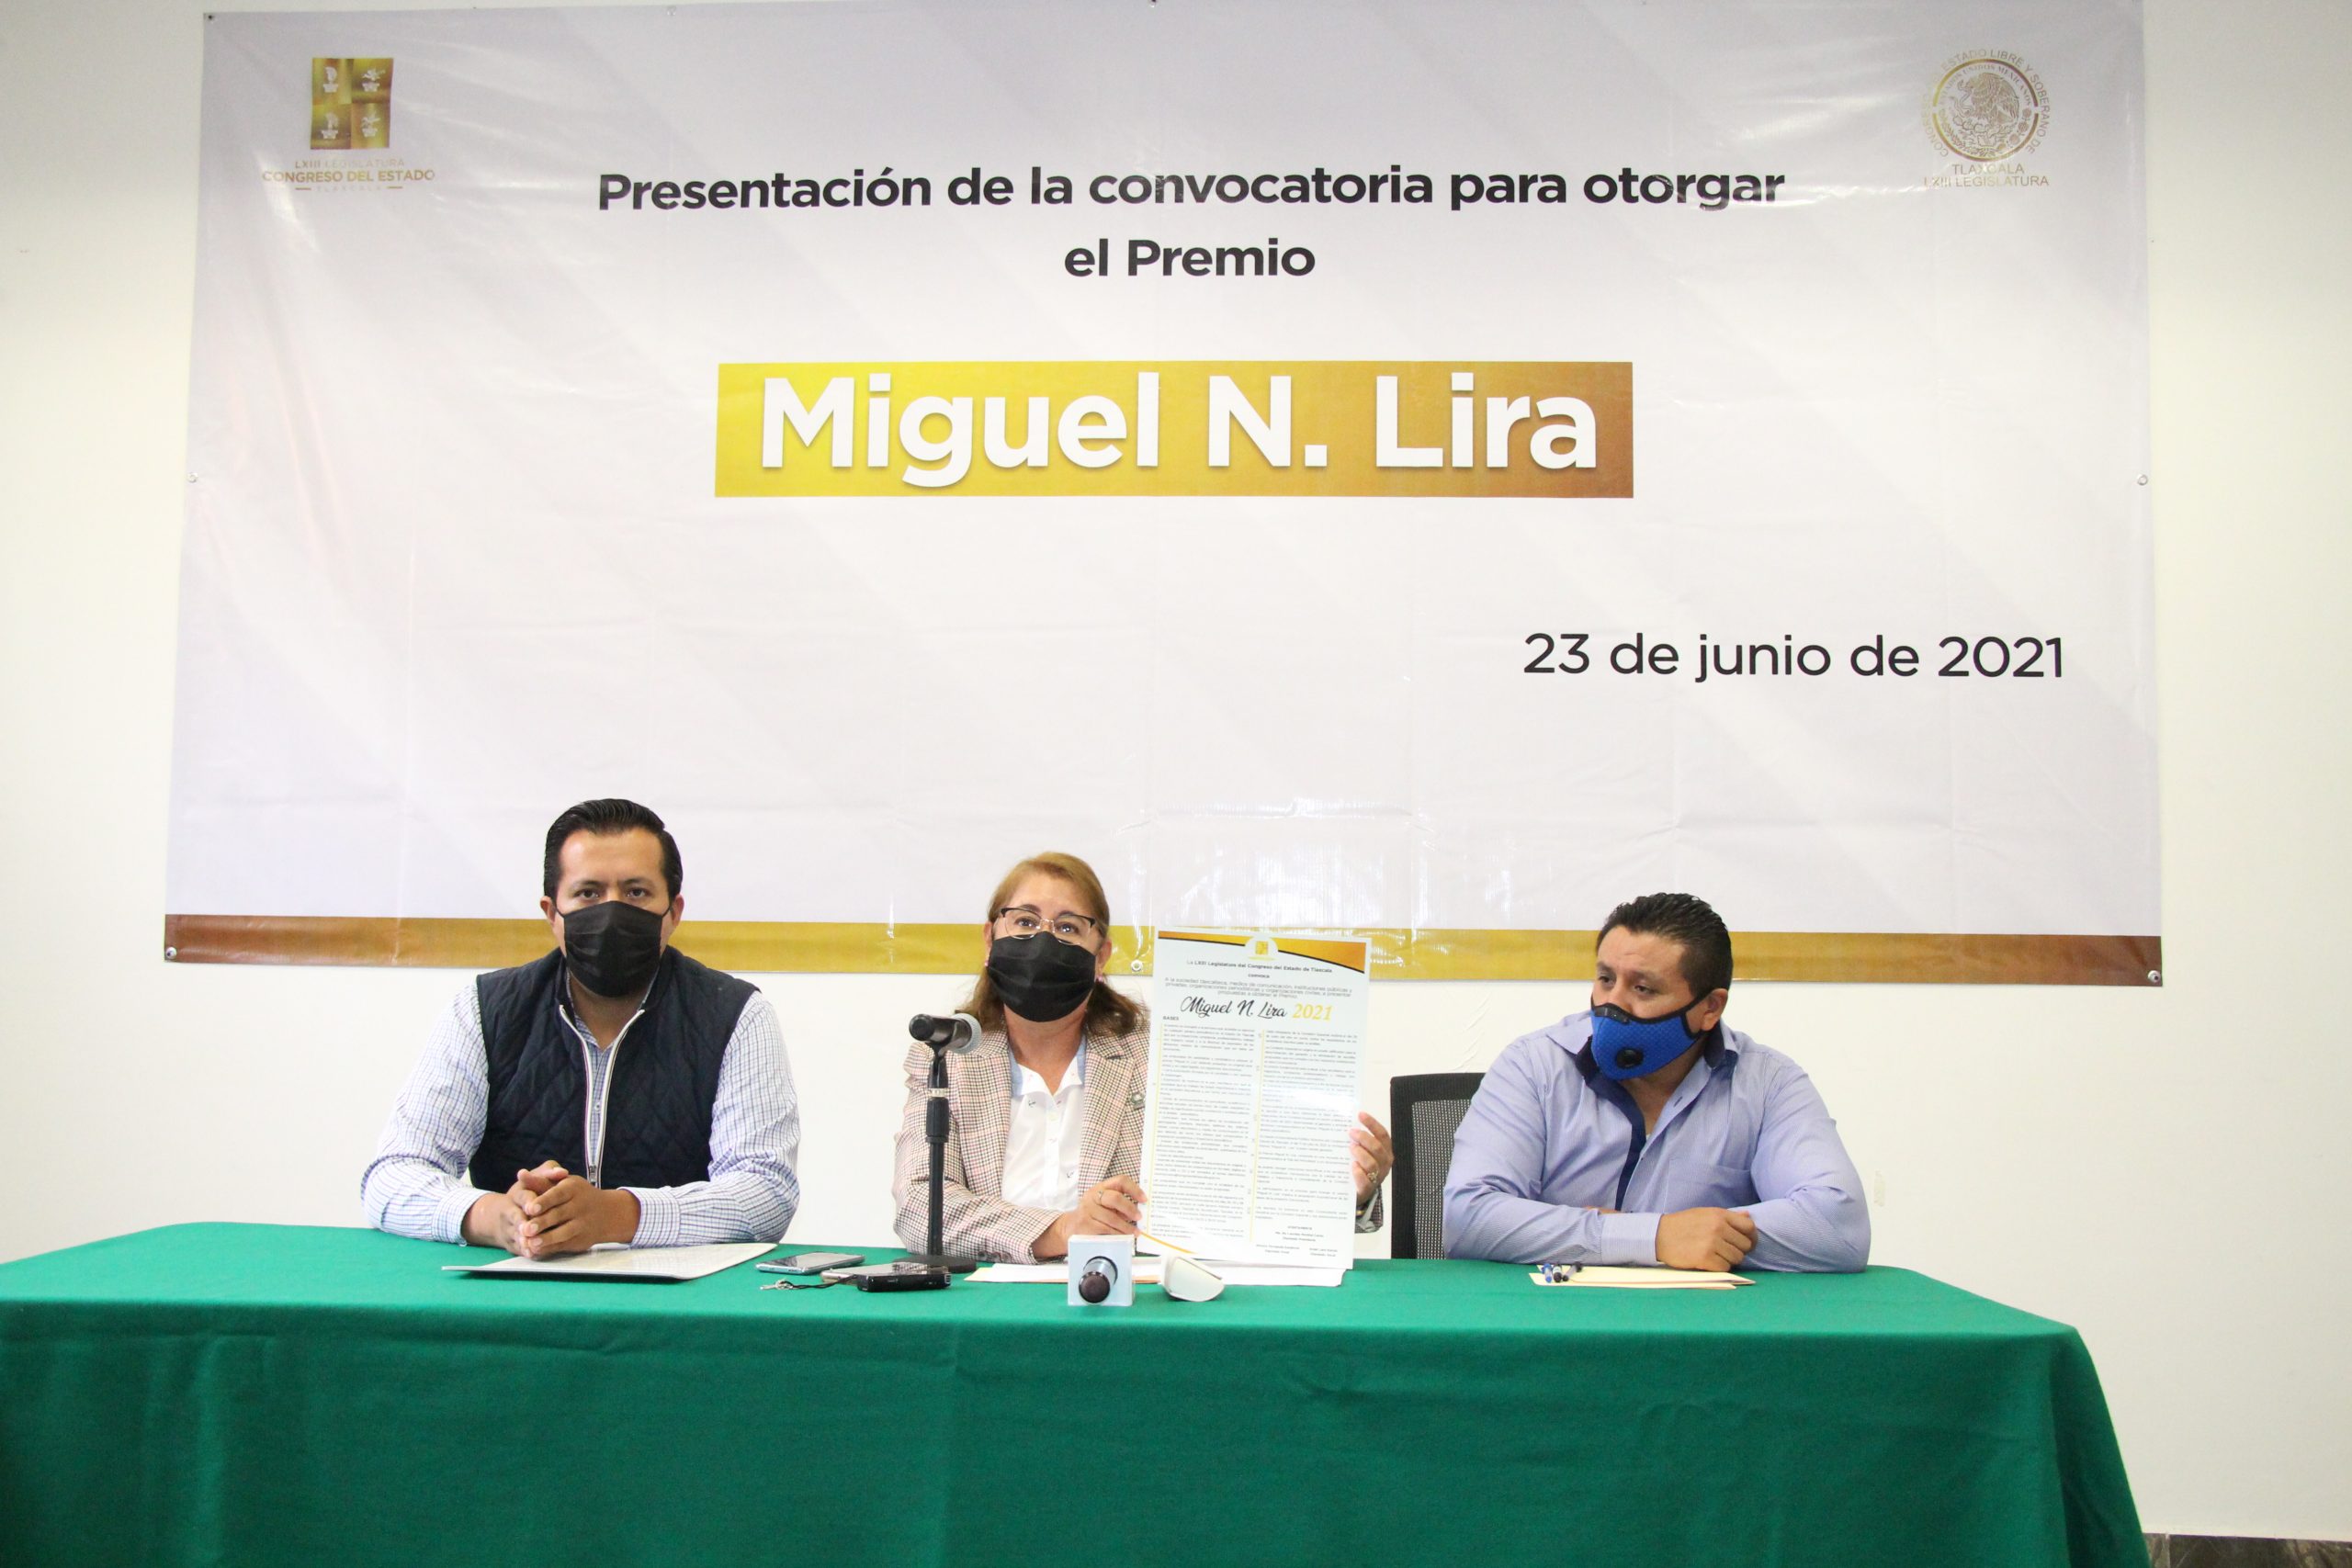 Presenta Congreso convocatoria para otorgar el premio “Miguel N. Lira”